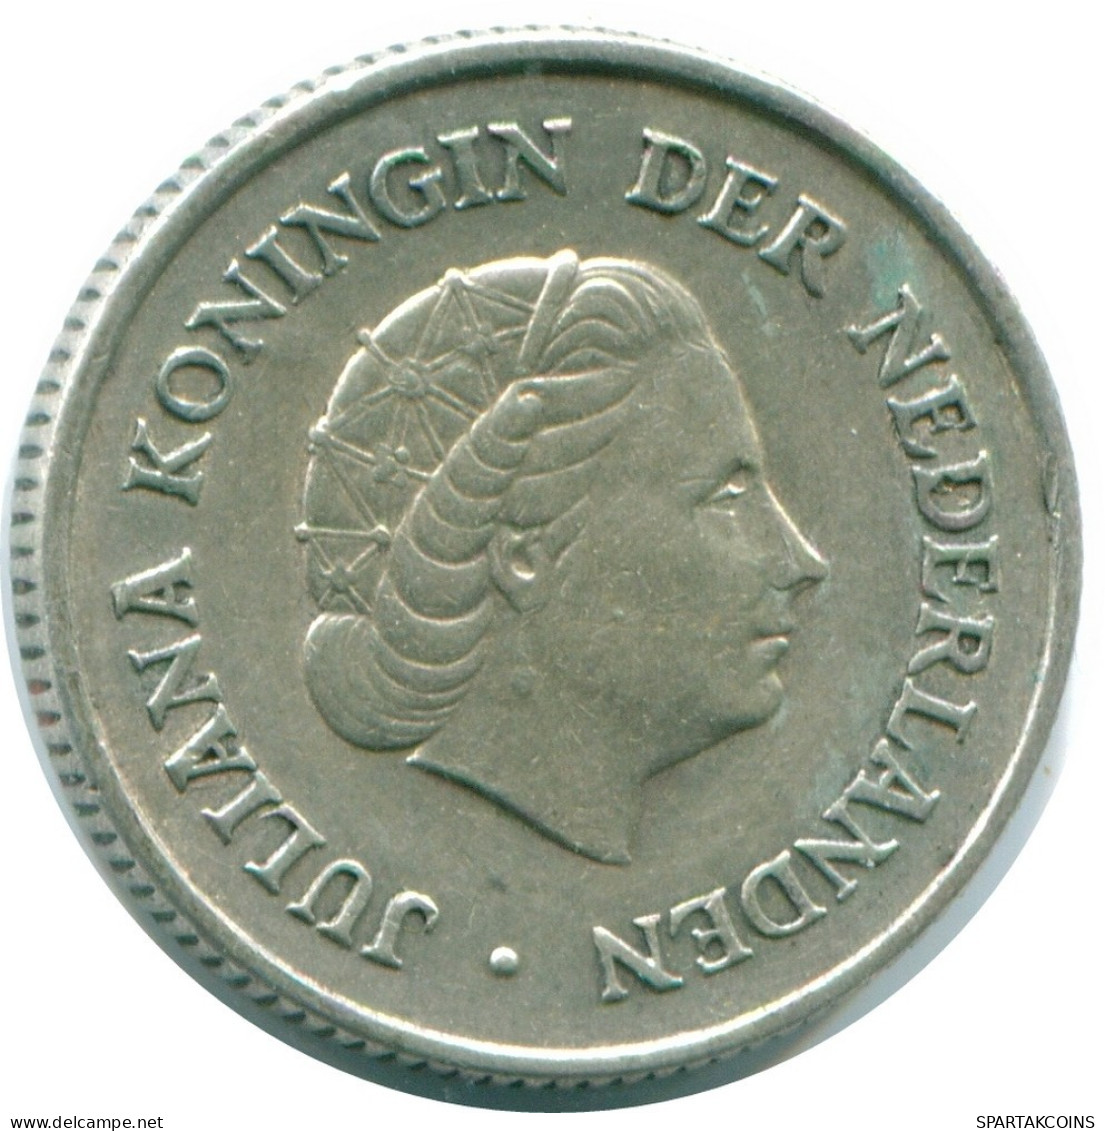 1/4 GULDEN 1965 NIEDERLÄNDISCHE ANTILLEN SILBER Koloniale Münze #NL11313.4.D.A - Antilles Néerlandaises